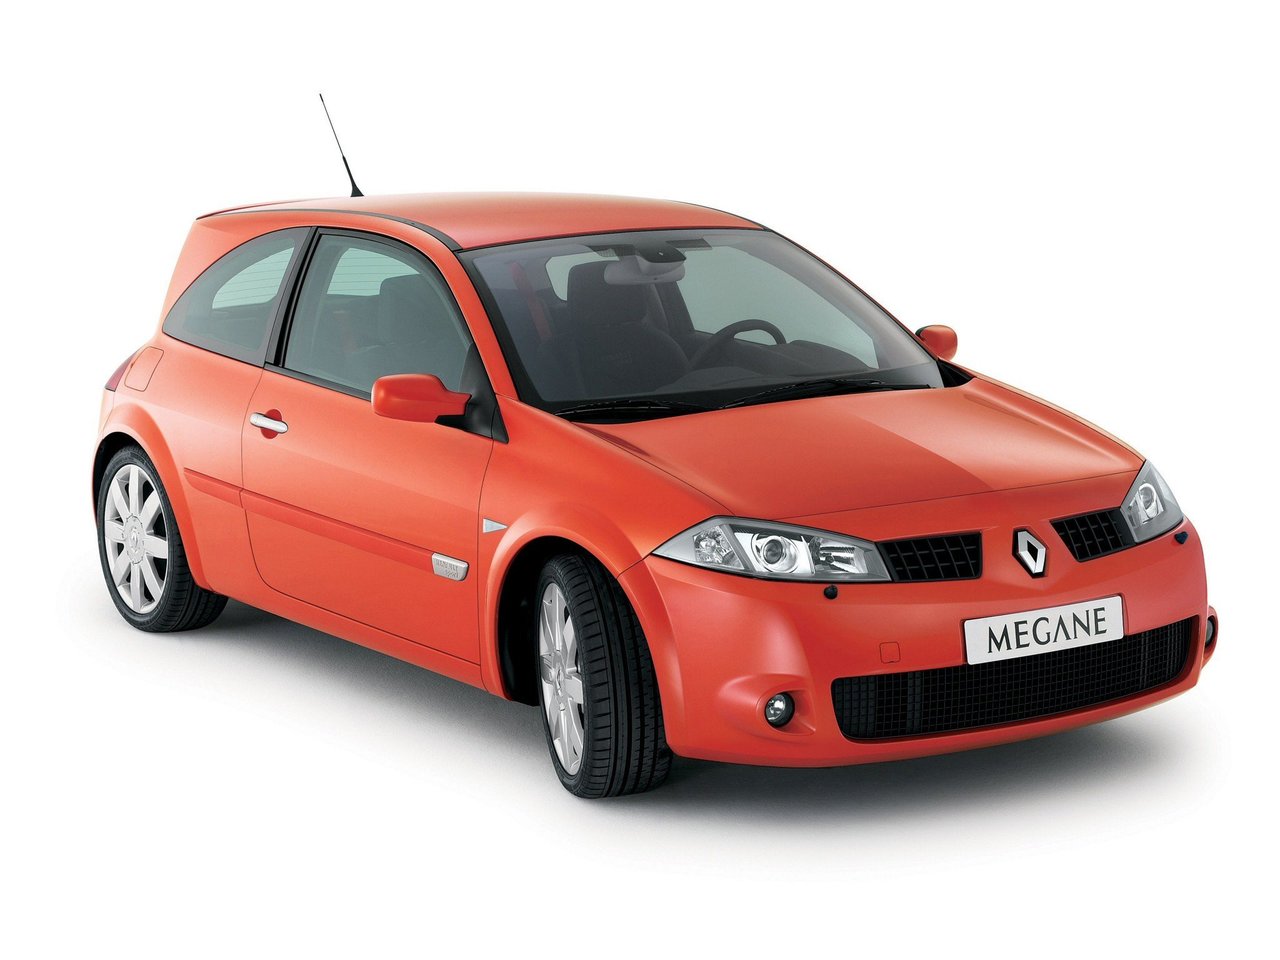 Расход газа одной комплектации хэтчбека три двери Renault Megane RS. Разница стоимости заправки газом и бензином. Автономный пробег до и после установки ГБО.